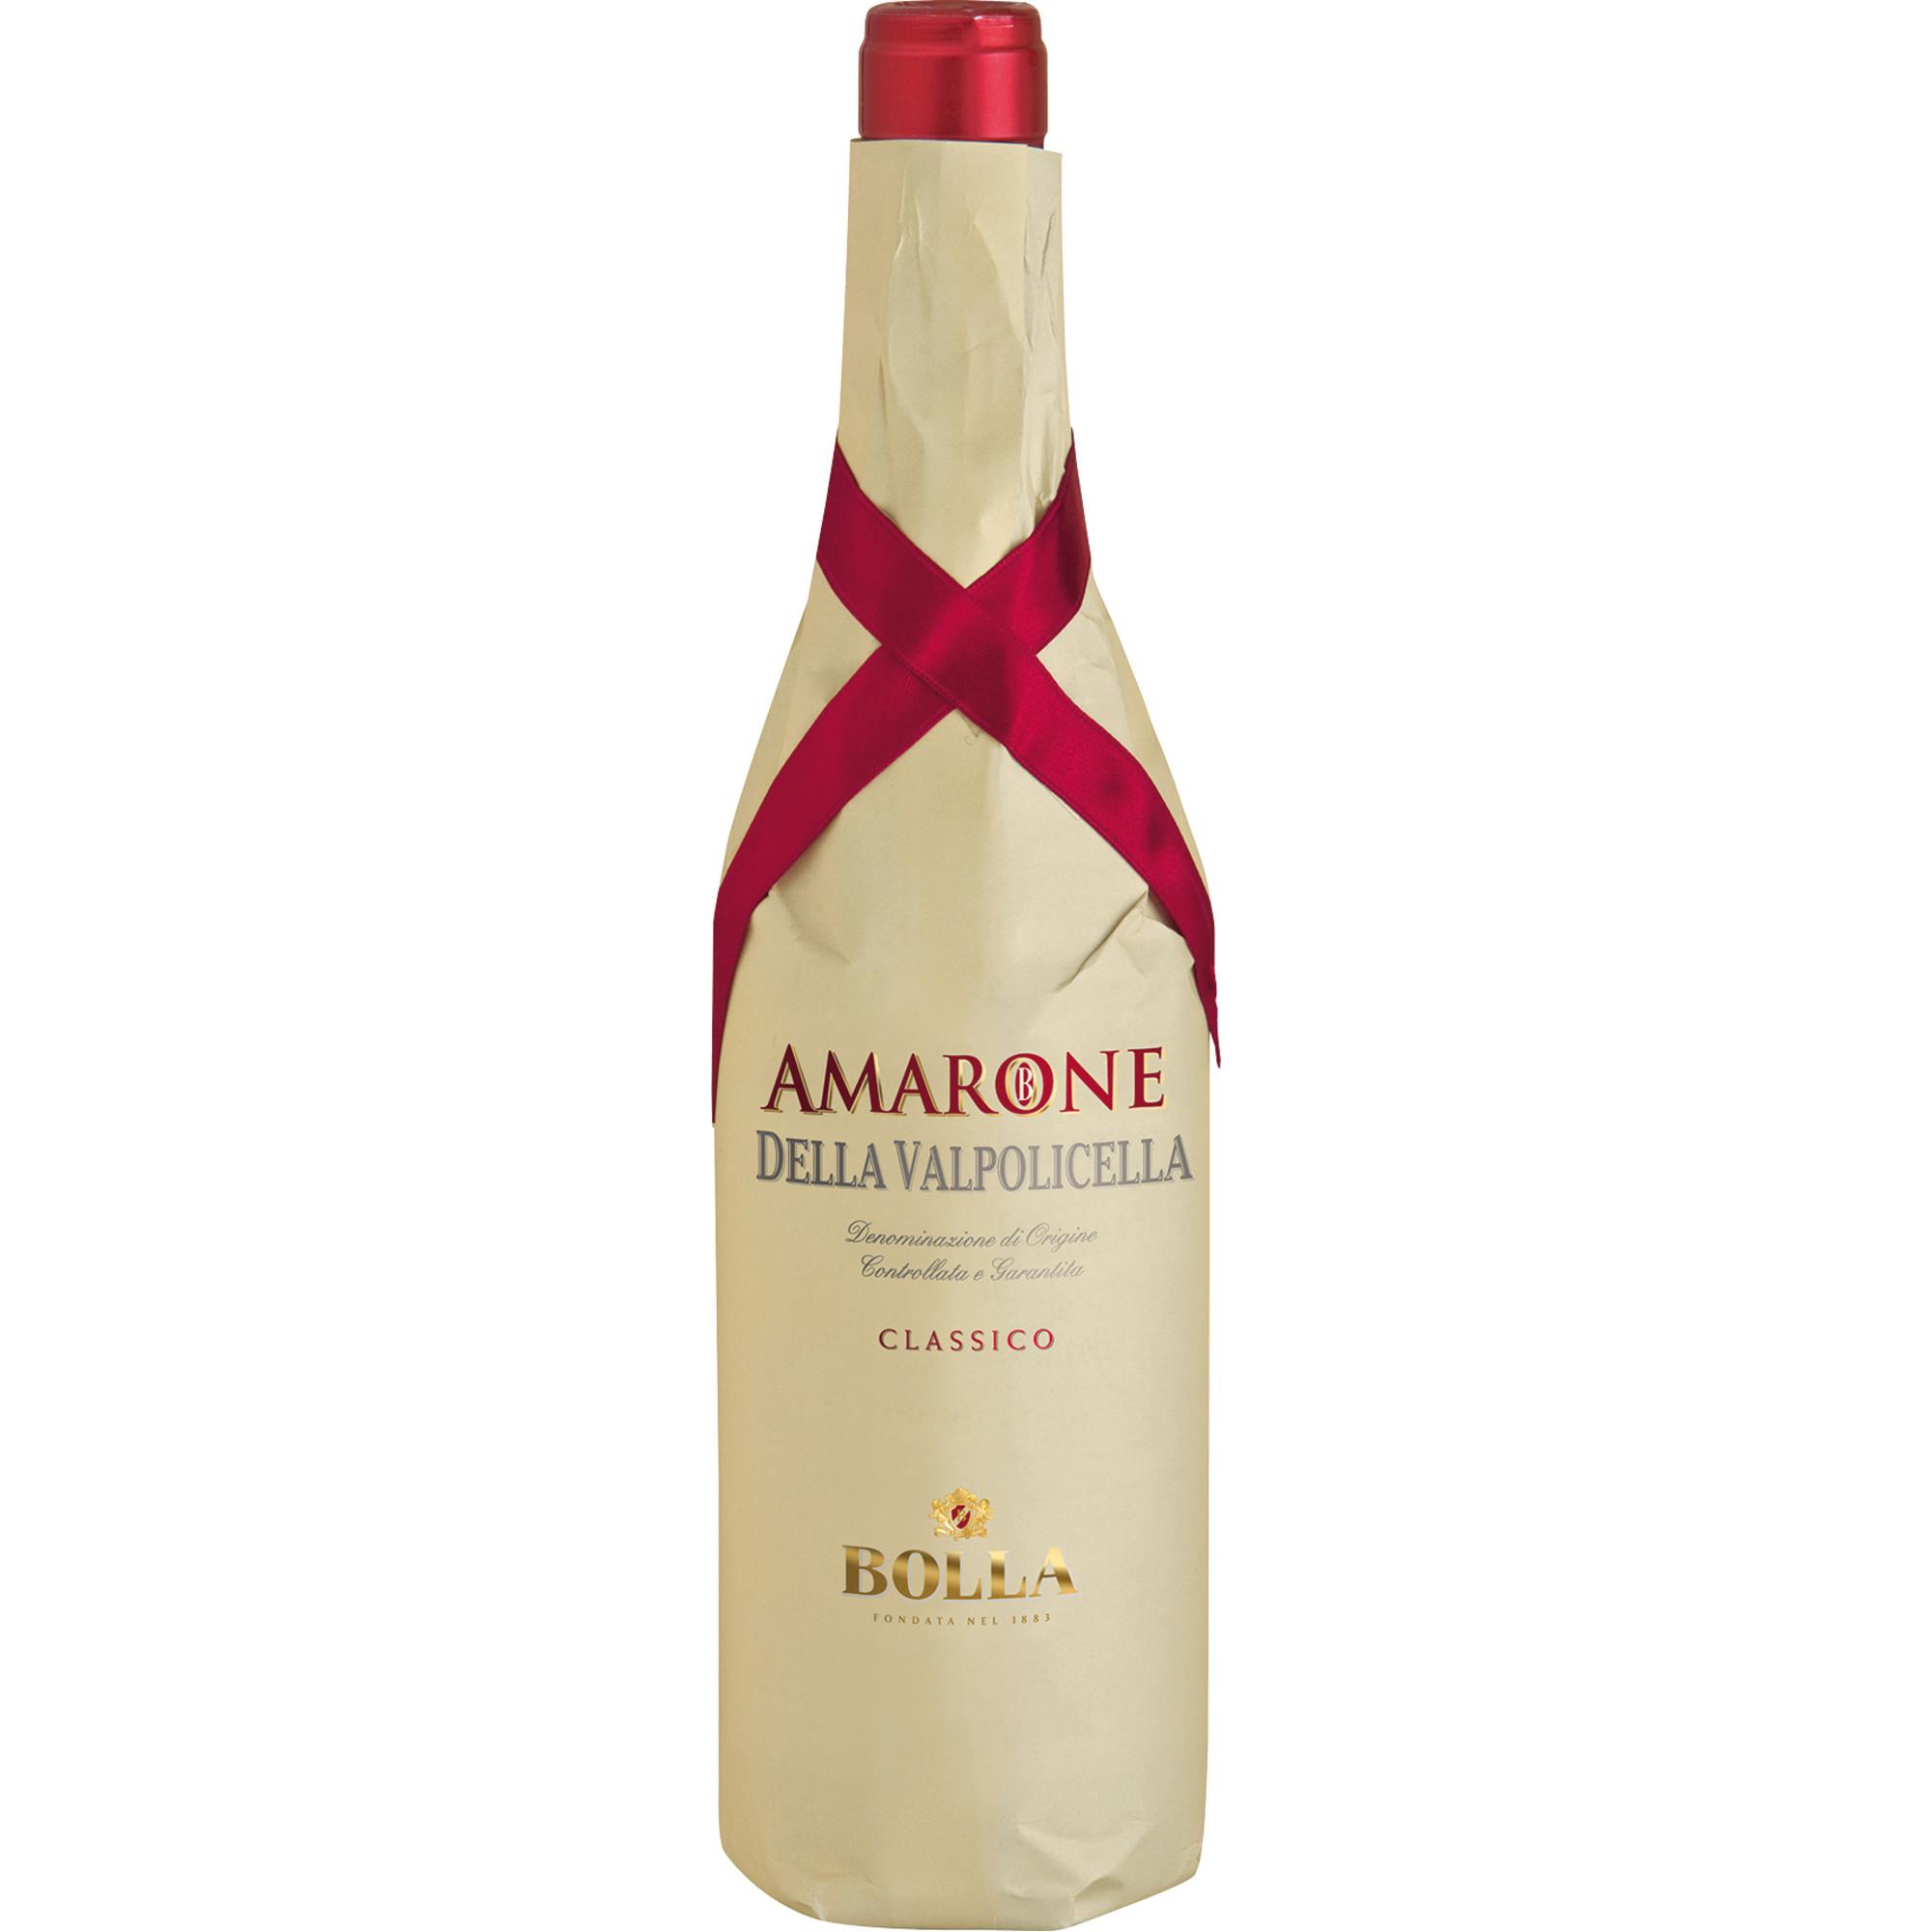 Amarone della Valpolicella Classico 0,75 L BOLLA